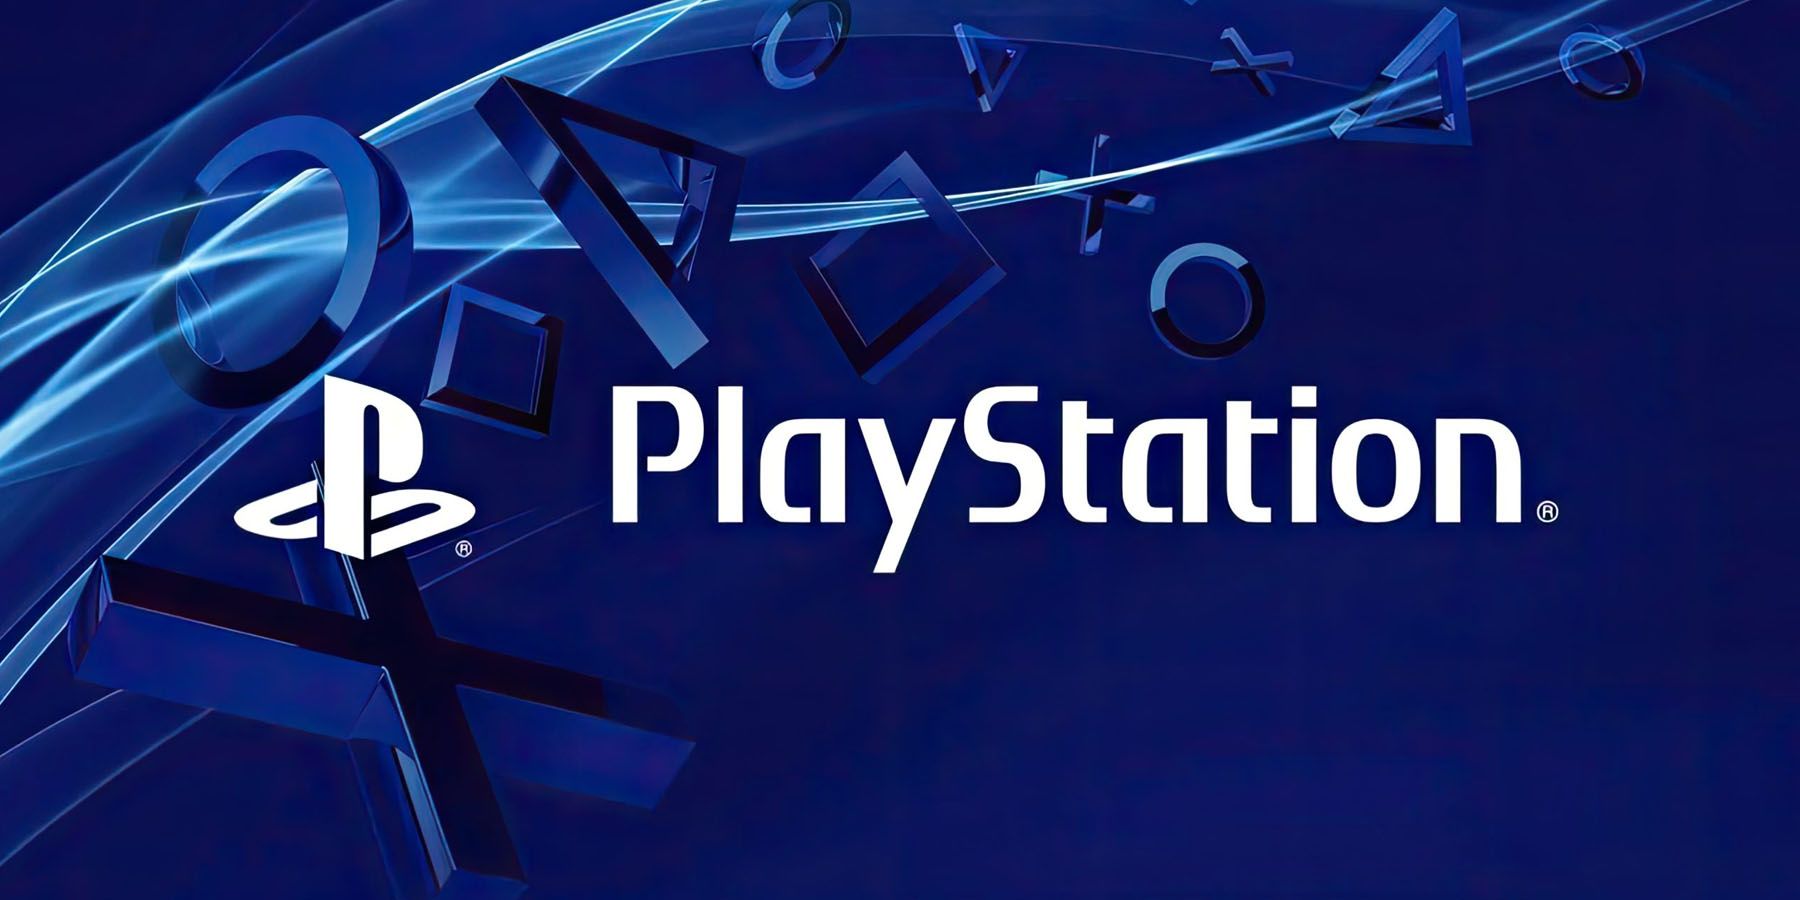 Το μεγάλο State of Play θα είναι διαθέσιμο στο PlayStation την επόμενη εβδομάδα